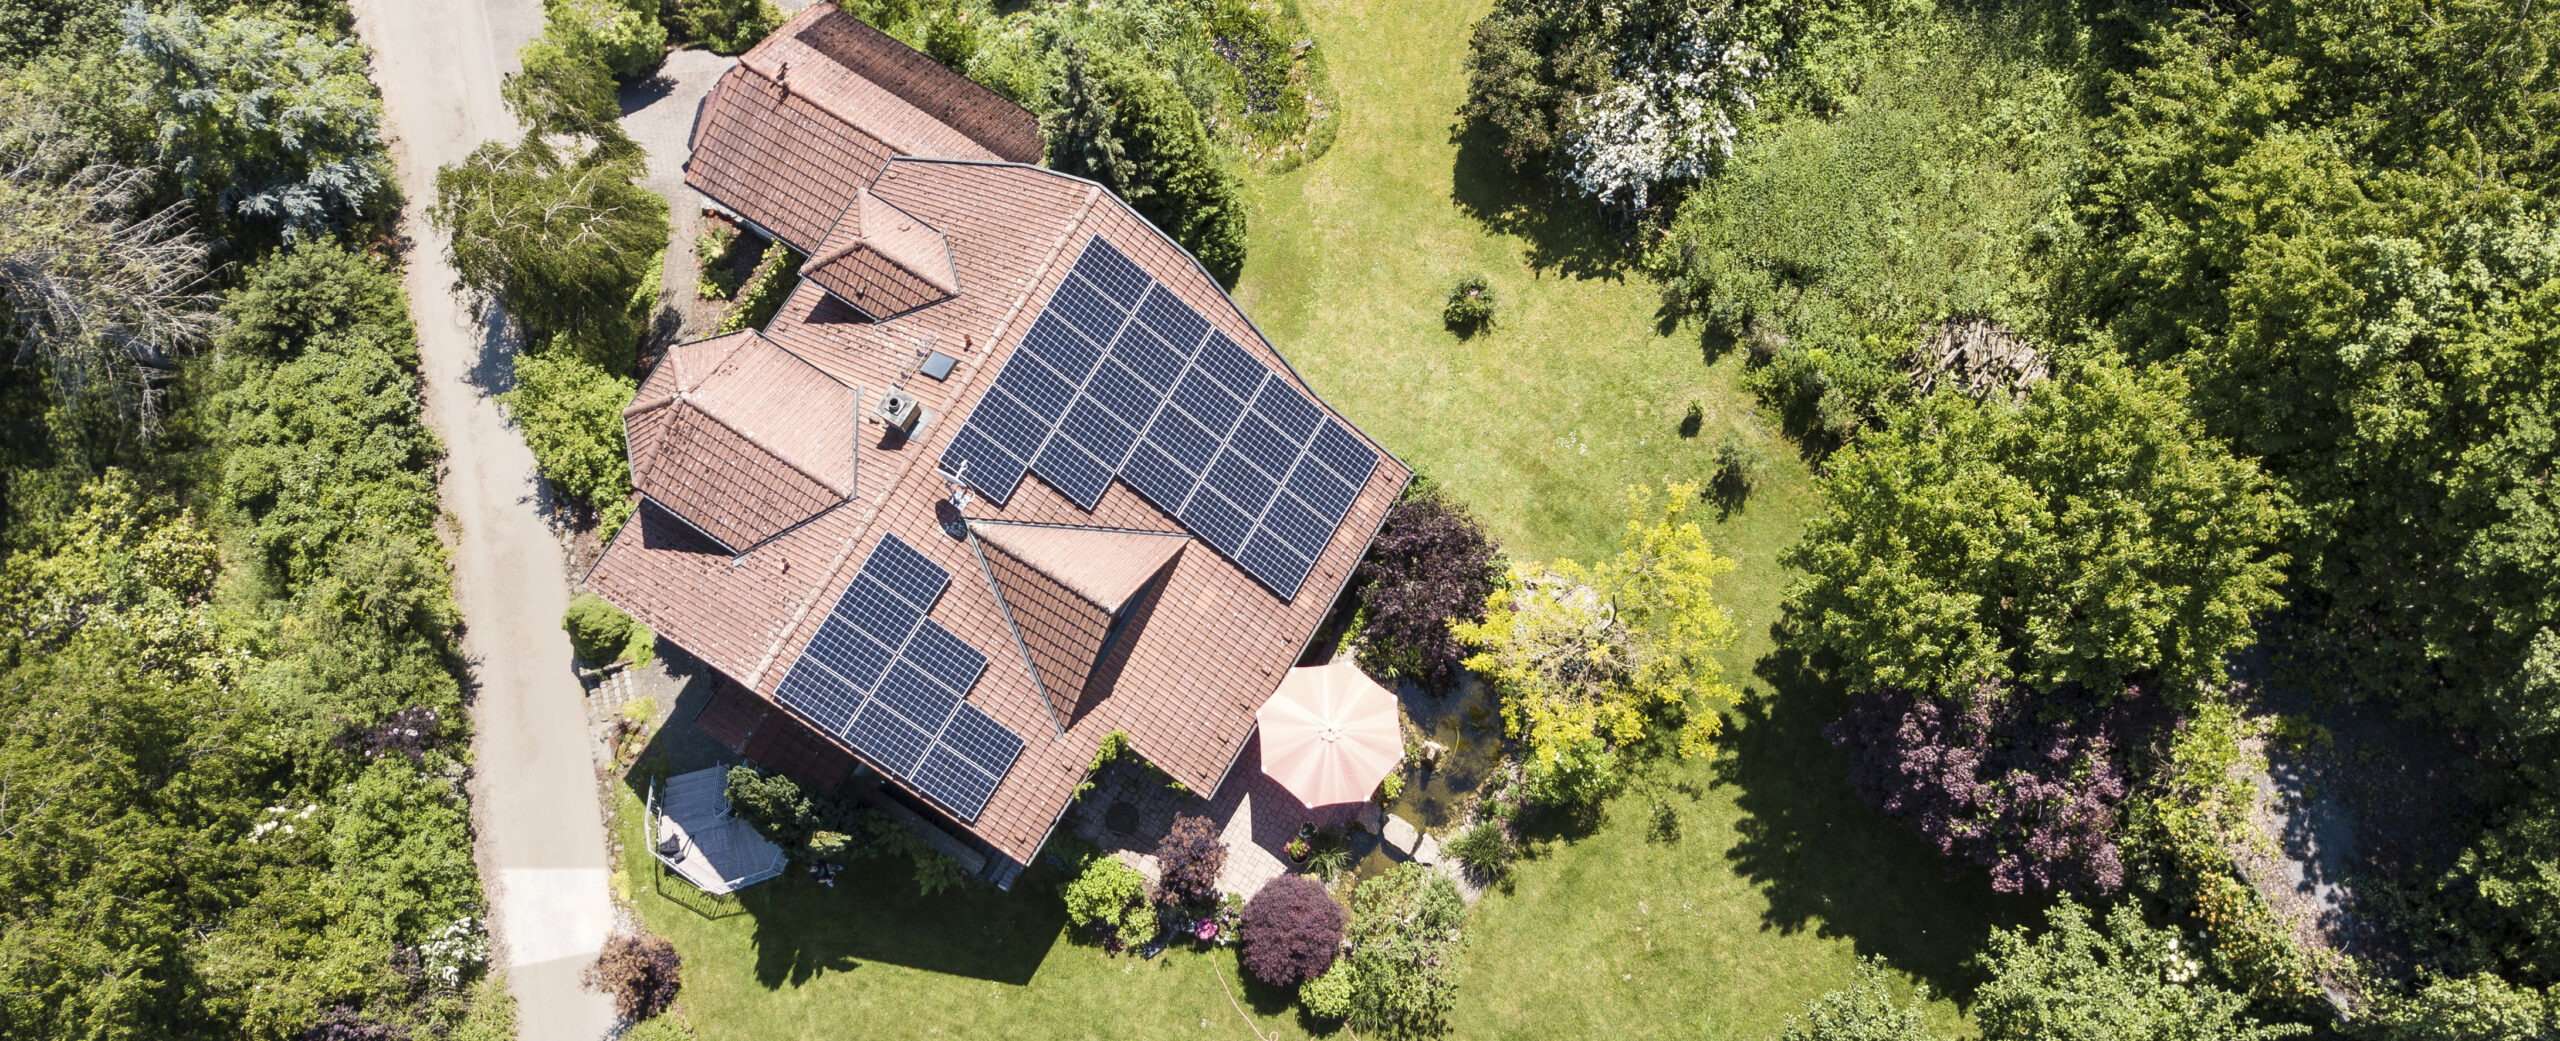 Photovoltaik auf Wohnhäusern